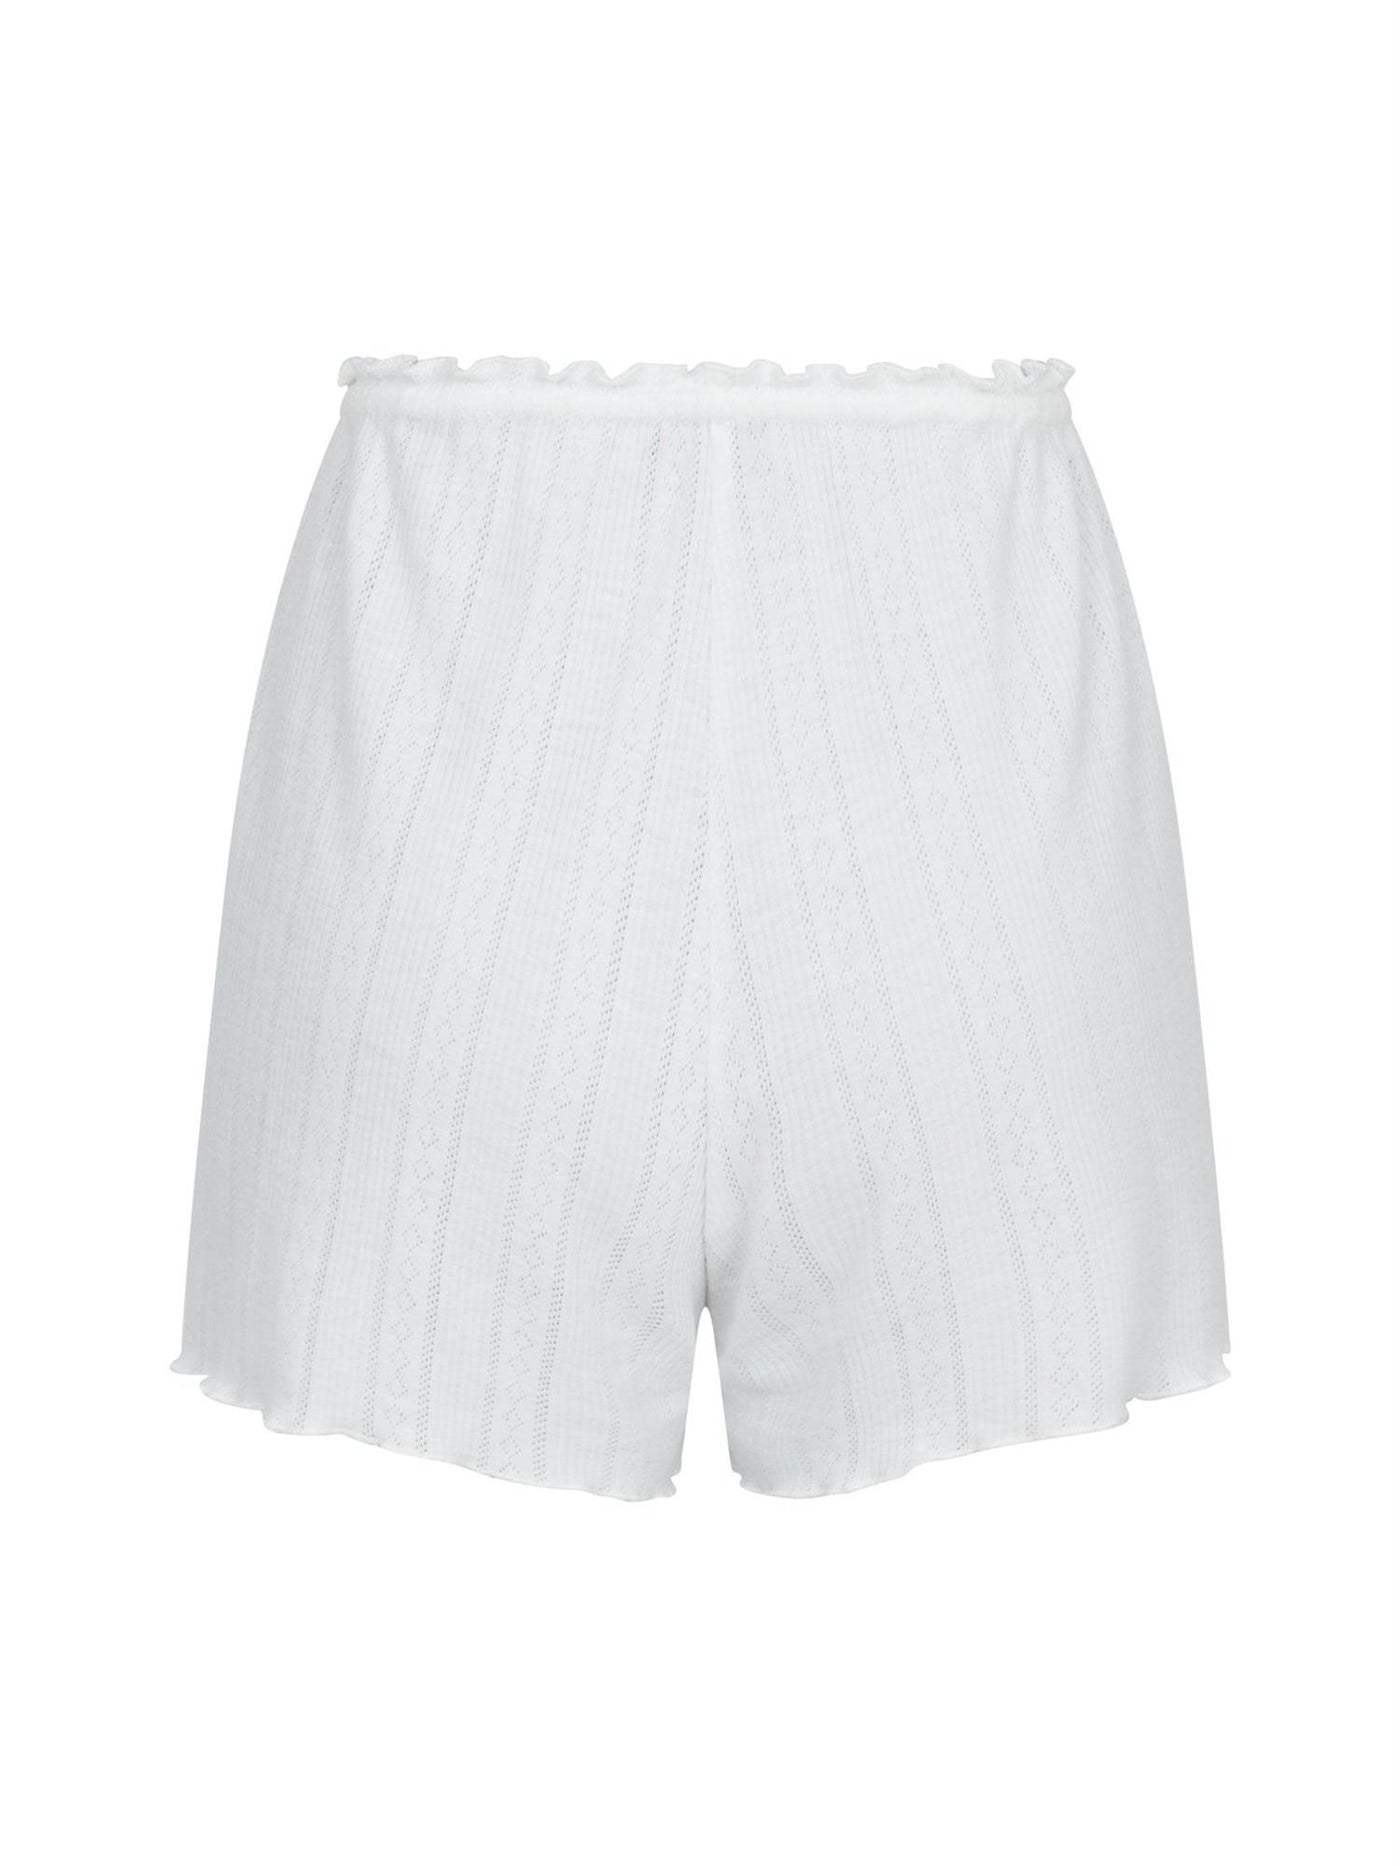 Merritt Pointelle Shorts White